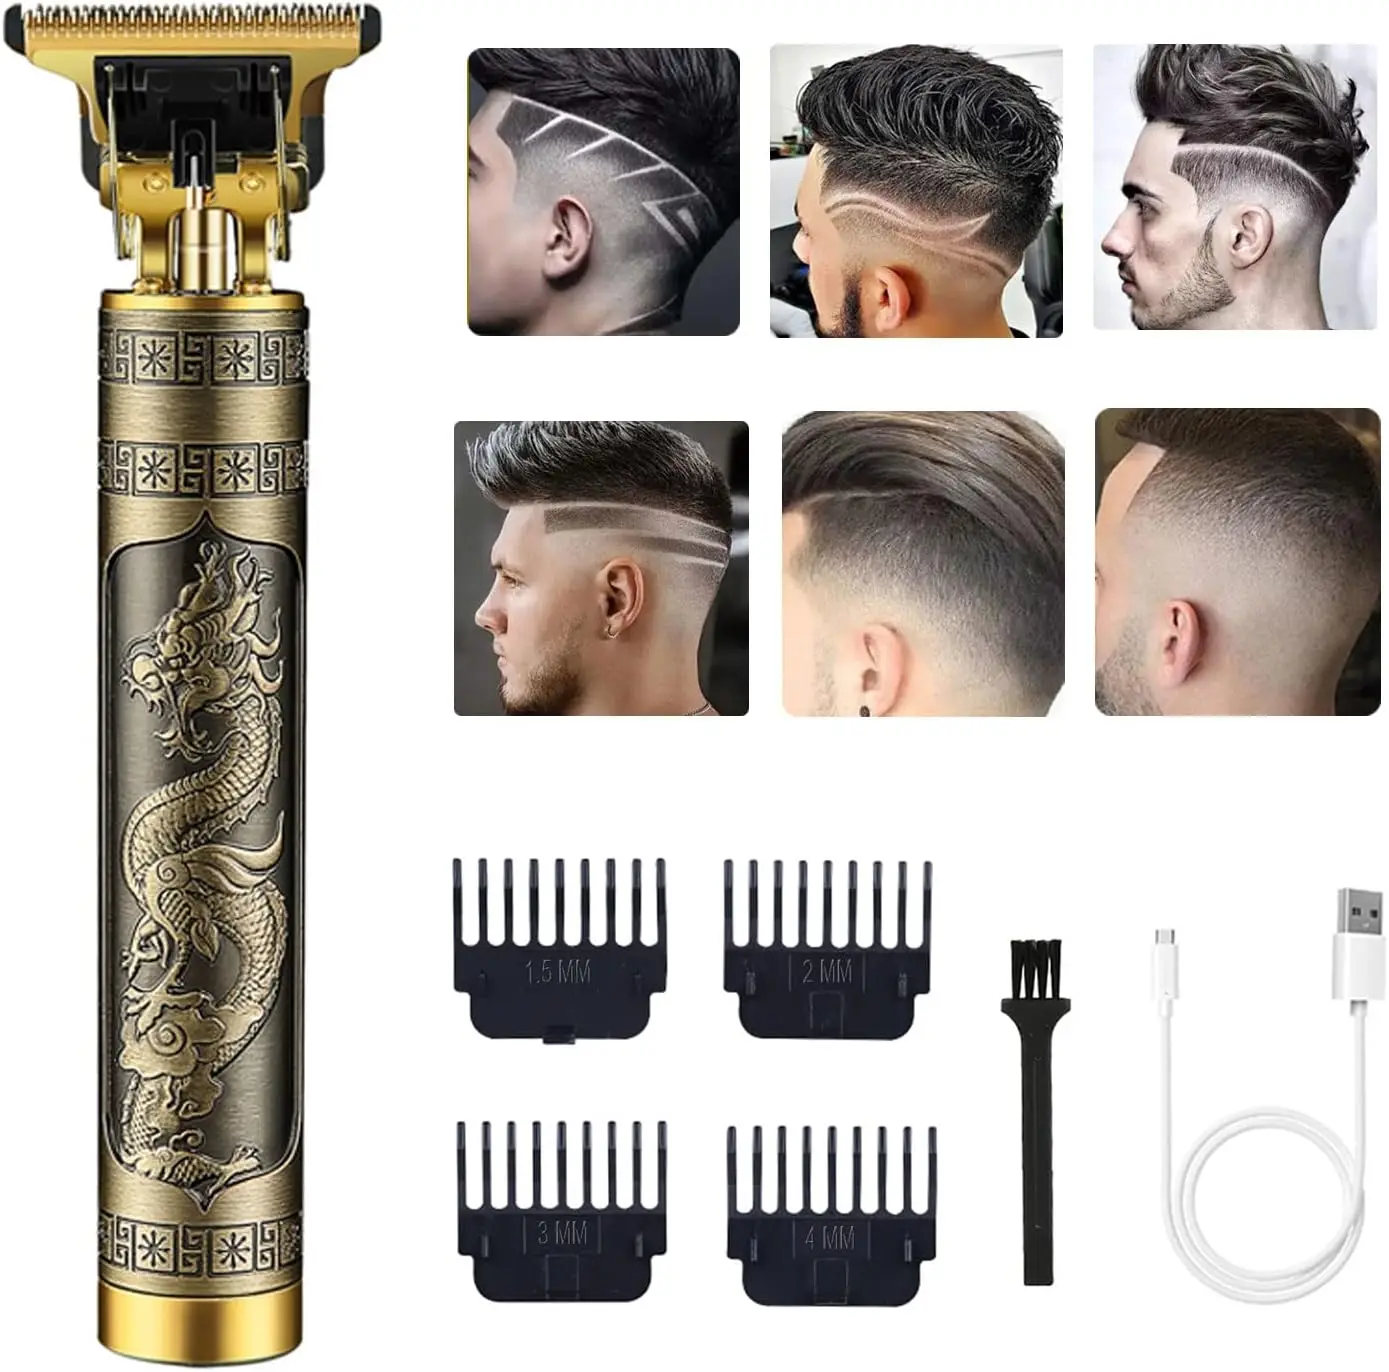 

Беспроводной триммер для волос T9, перезаряжаемый триммер для бороды, бритва, триммер для мужчин, машинка для стрижки, бритье с направляющими расчески